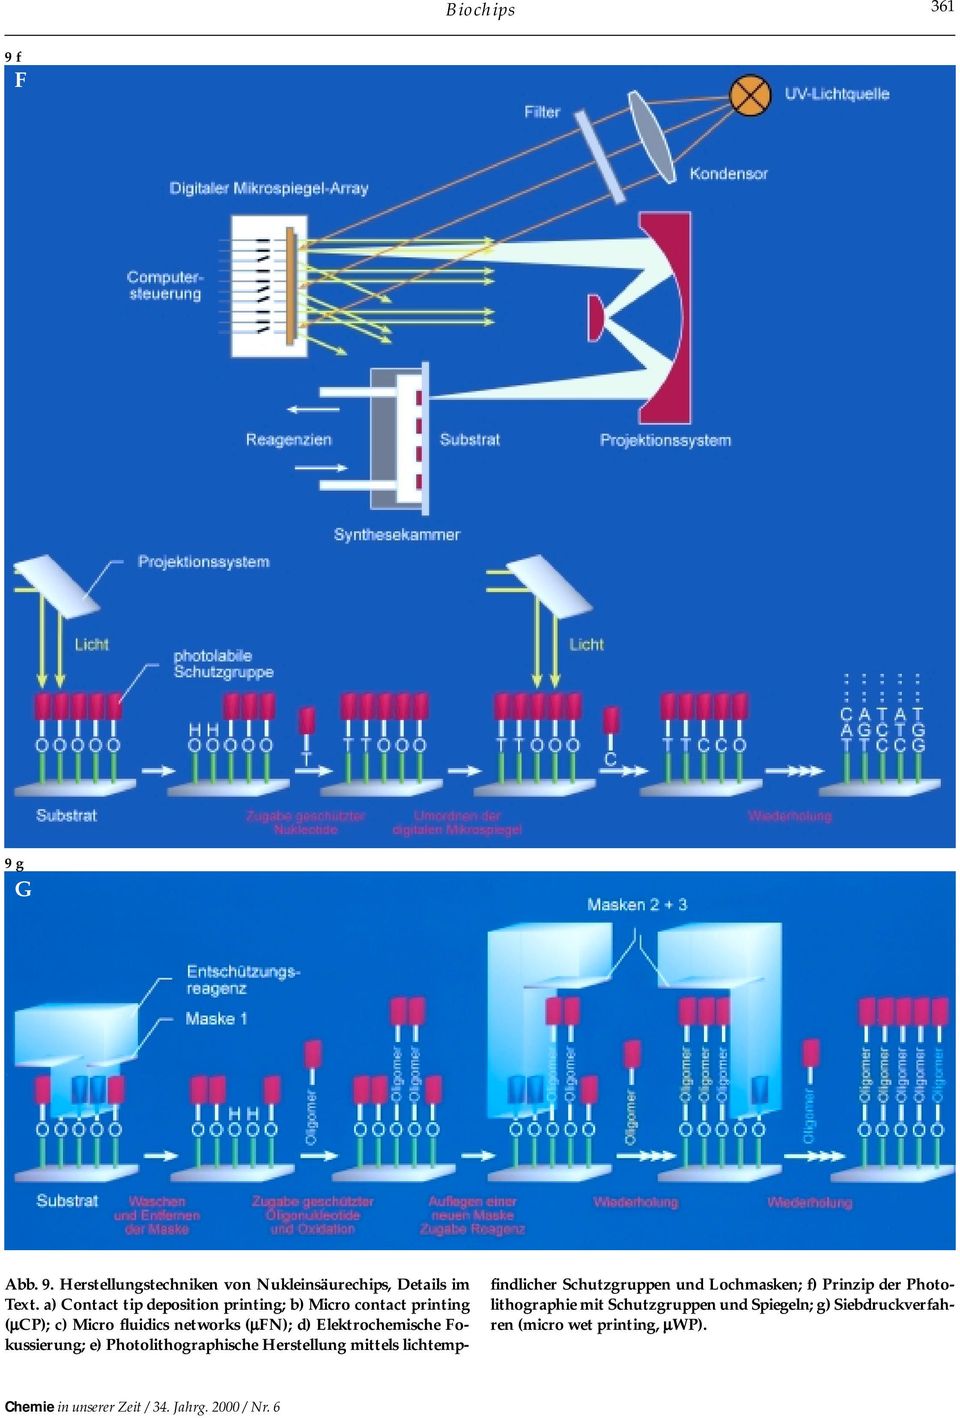 Elektrochemische Fokussierung; e) Photolithographische Herstellung mittels lichtempfindlicher Schutzgruppen